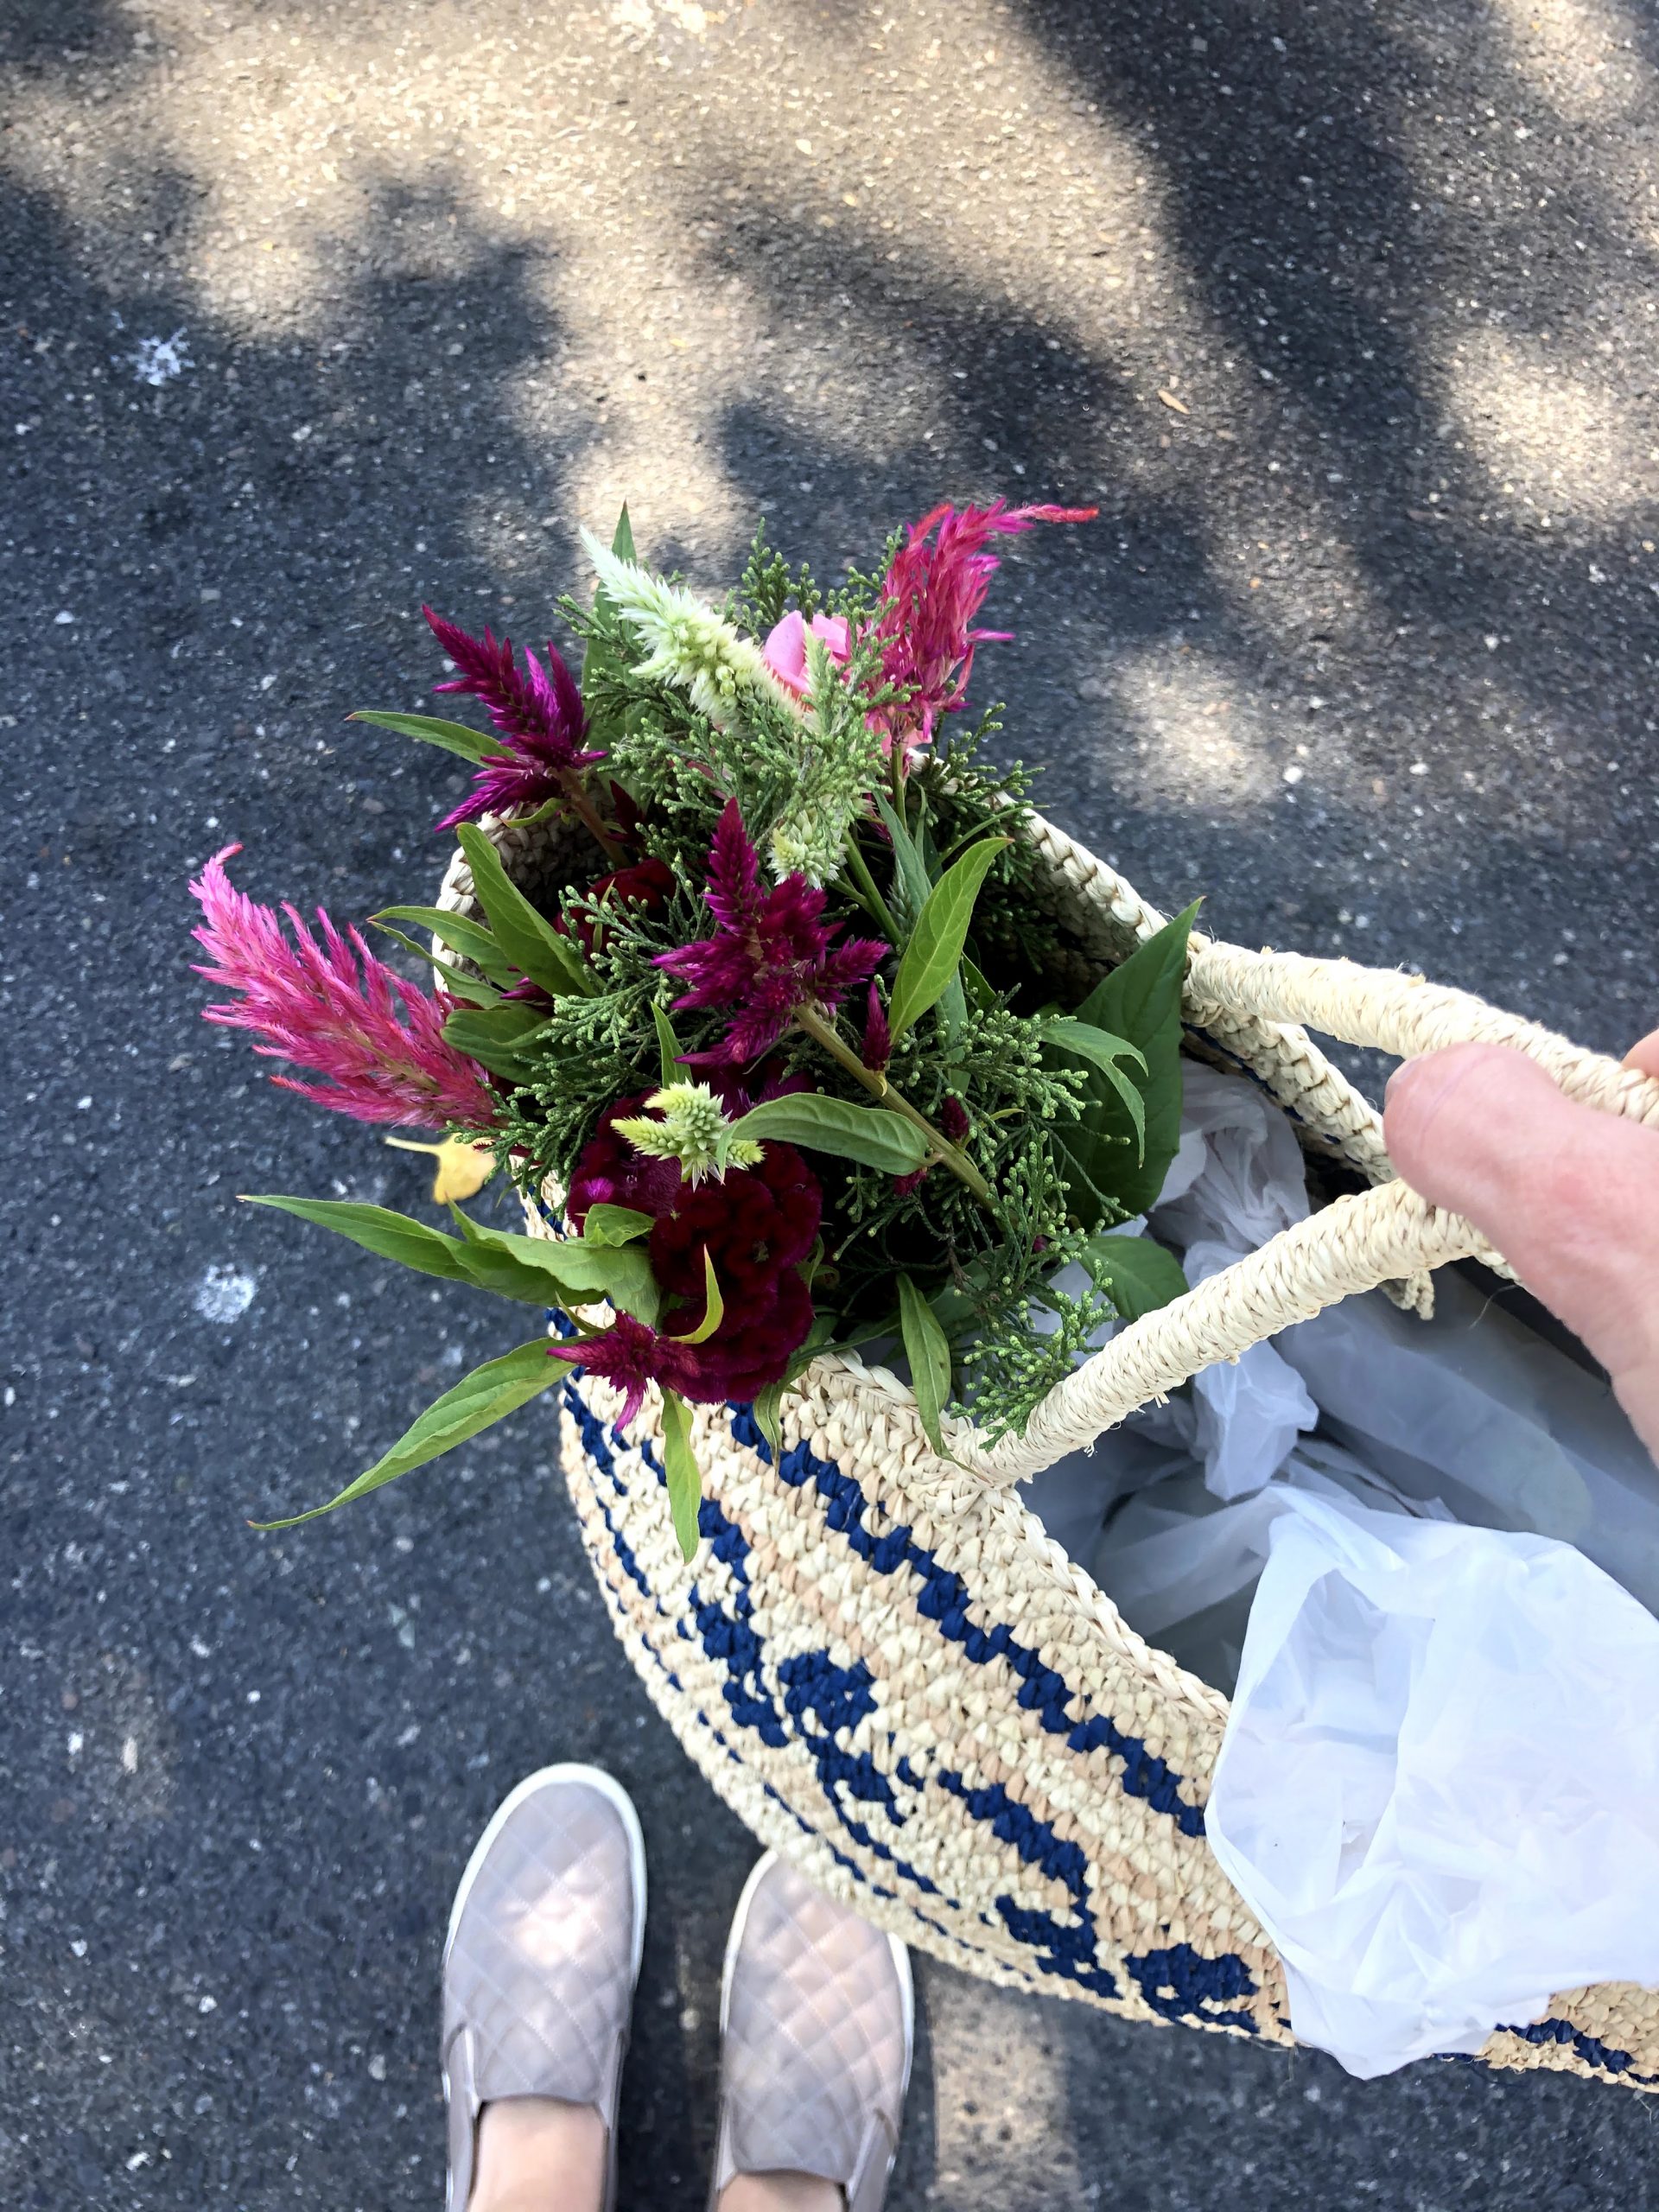 farmers market flowers in basket